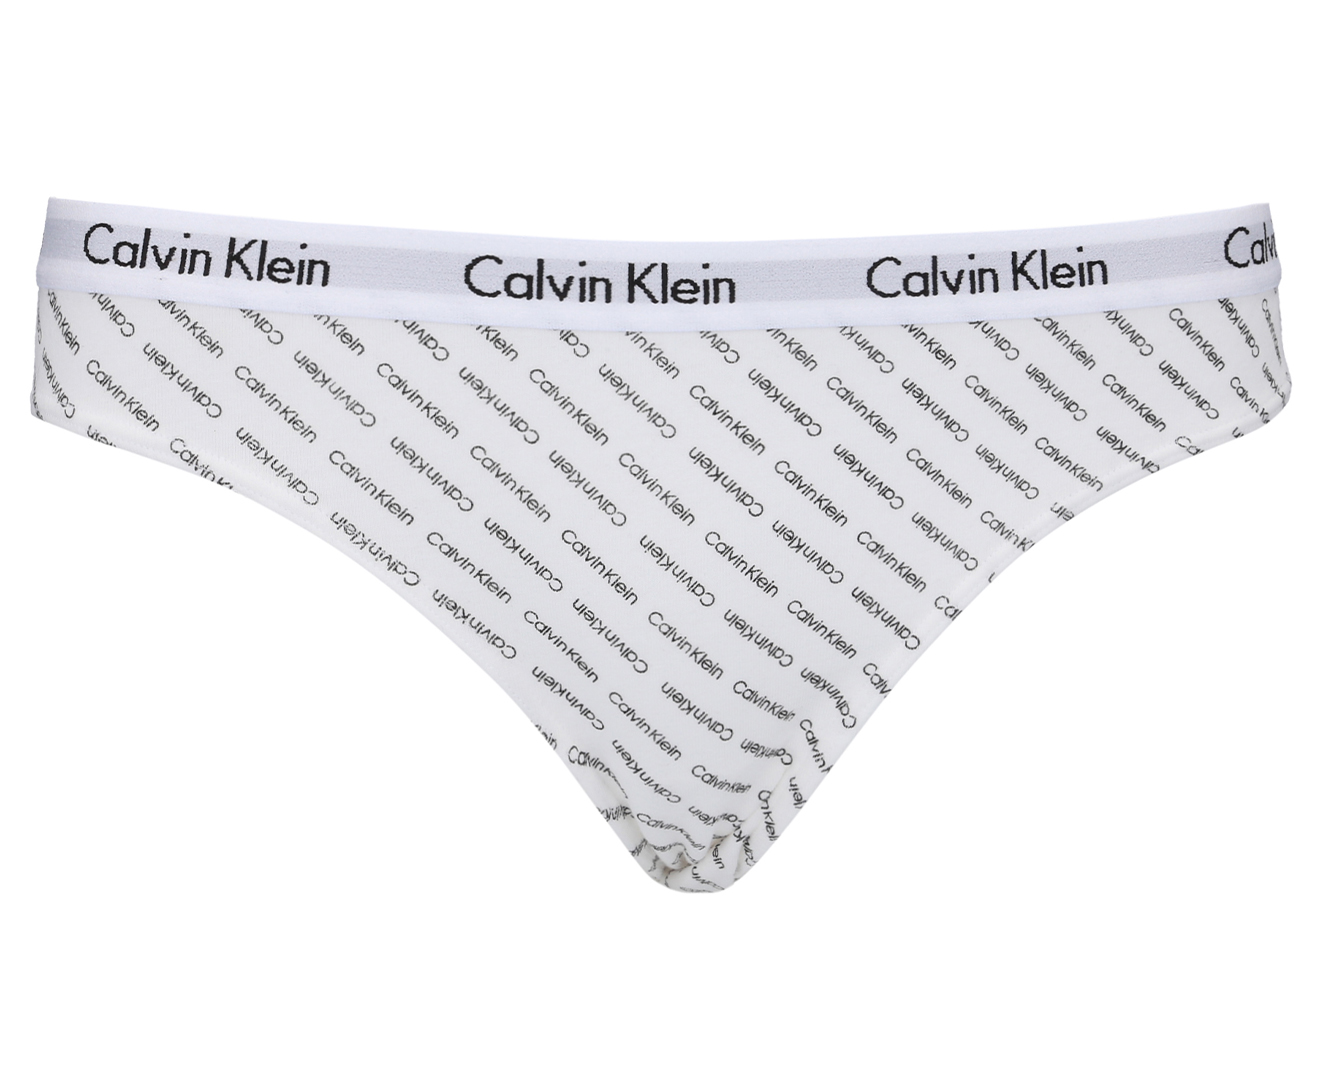 Calvin Klein Womens Carousel Bikini Briefs 3 Pack Nymphs Thighgrey 4841